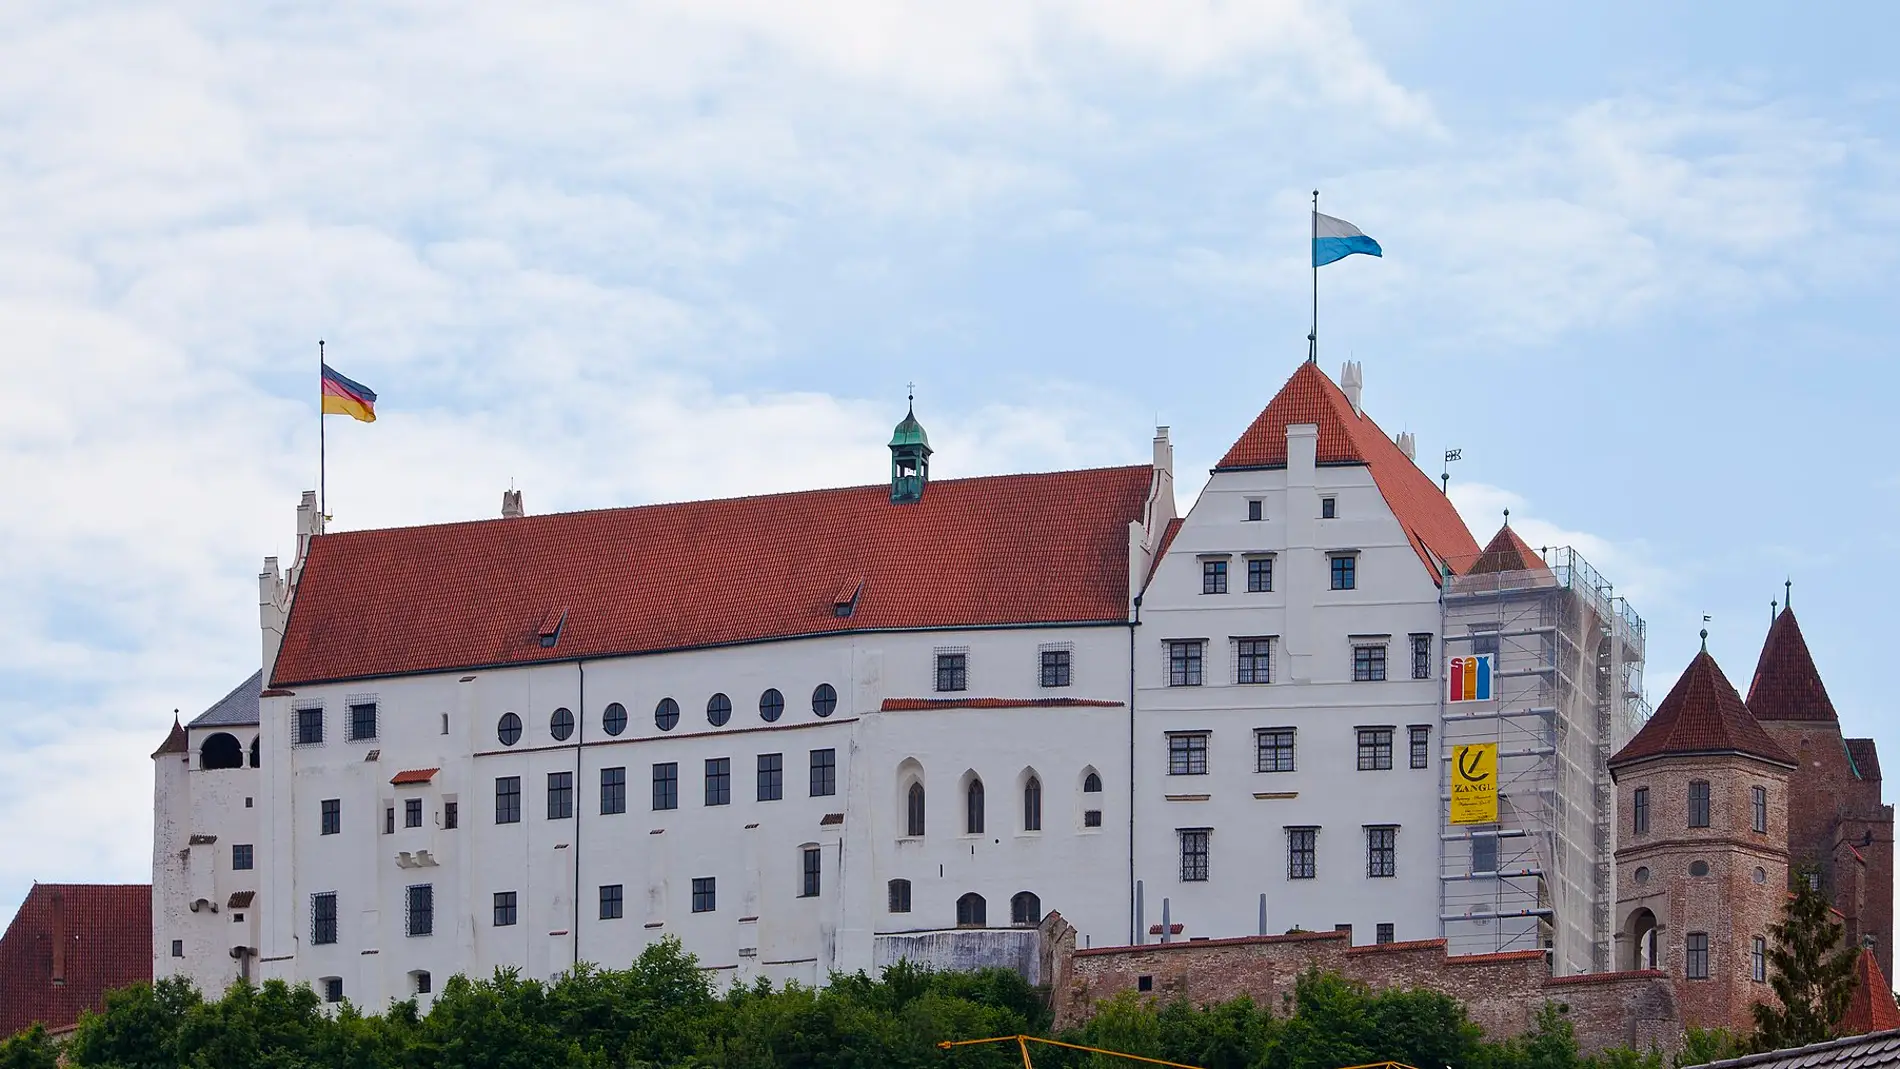 Castillo de Trausnitz